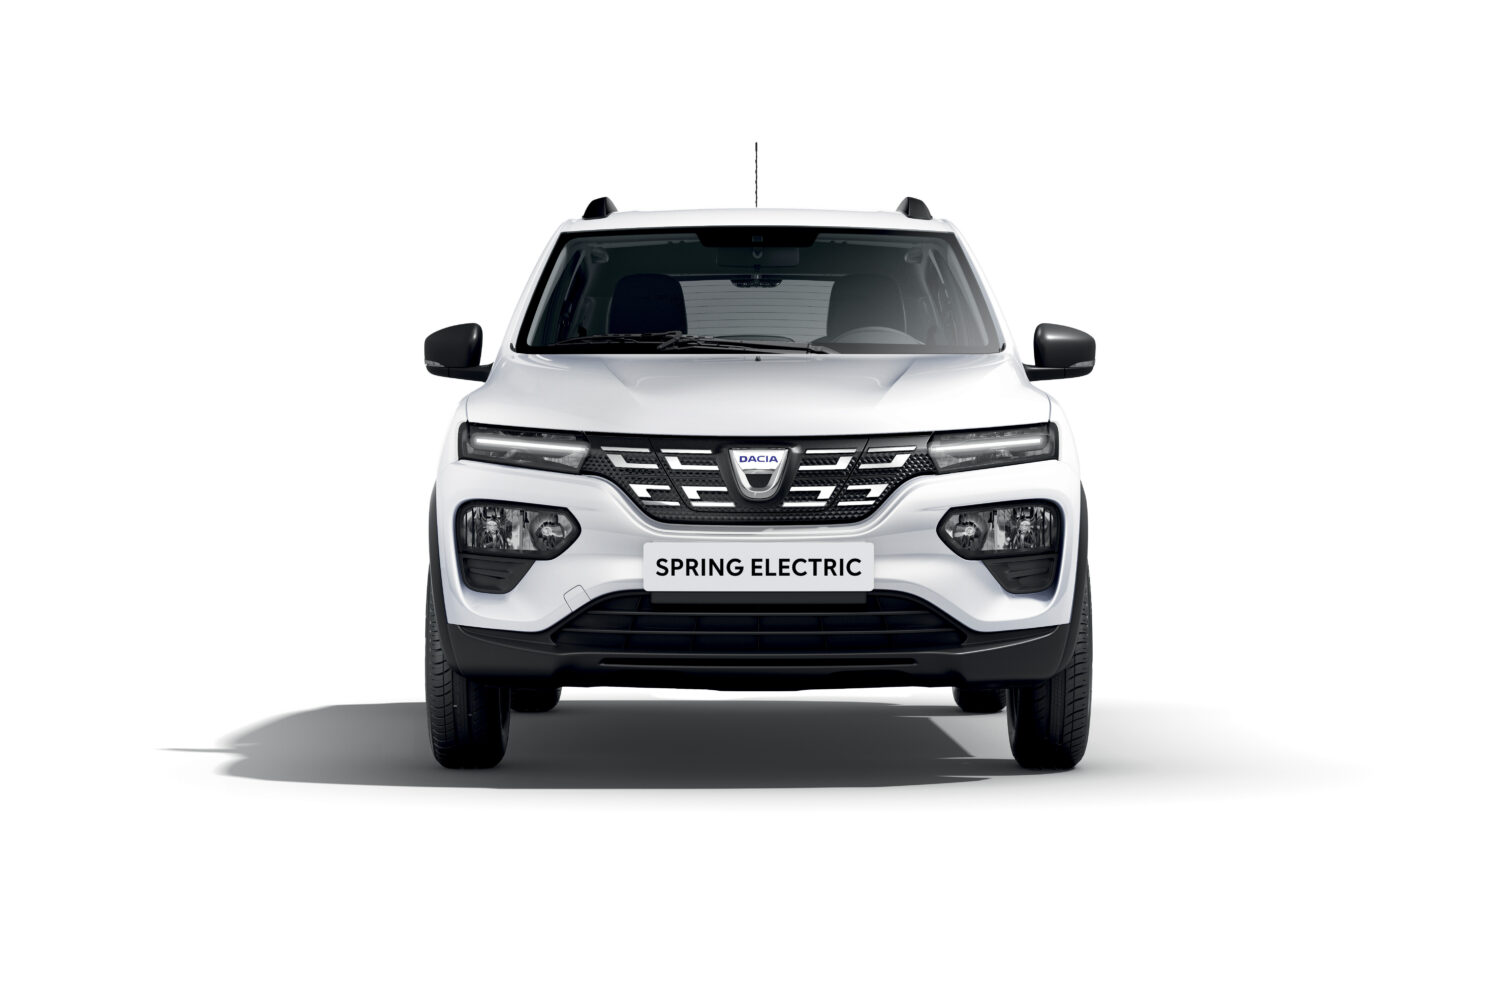 2020 - Dacia SPRING Carsharing